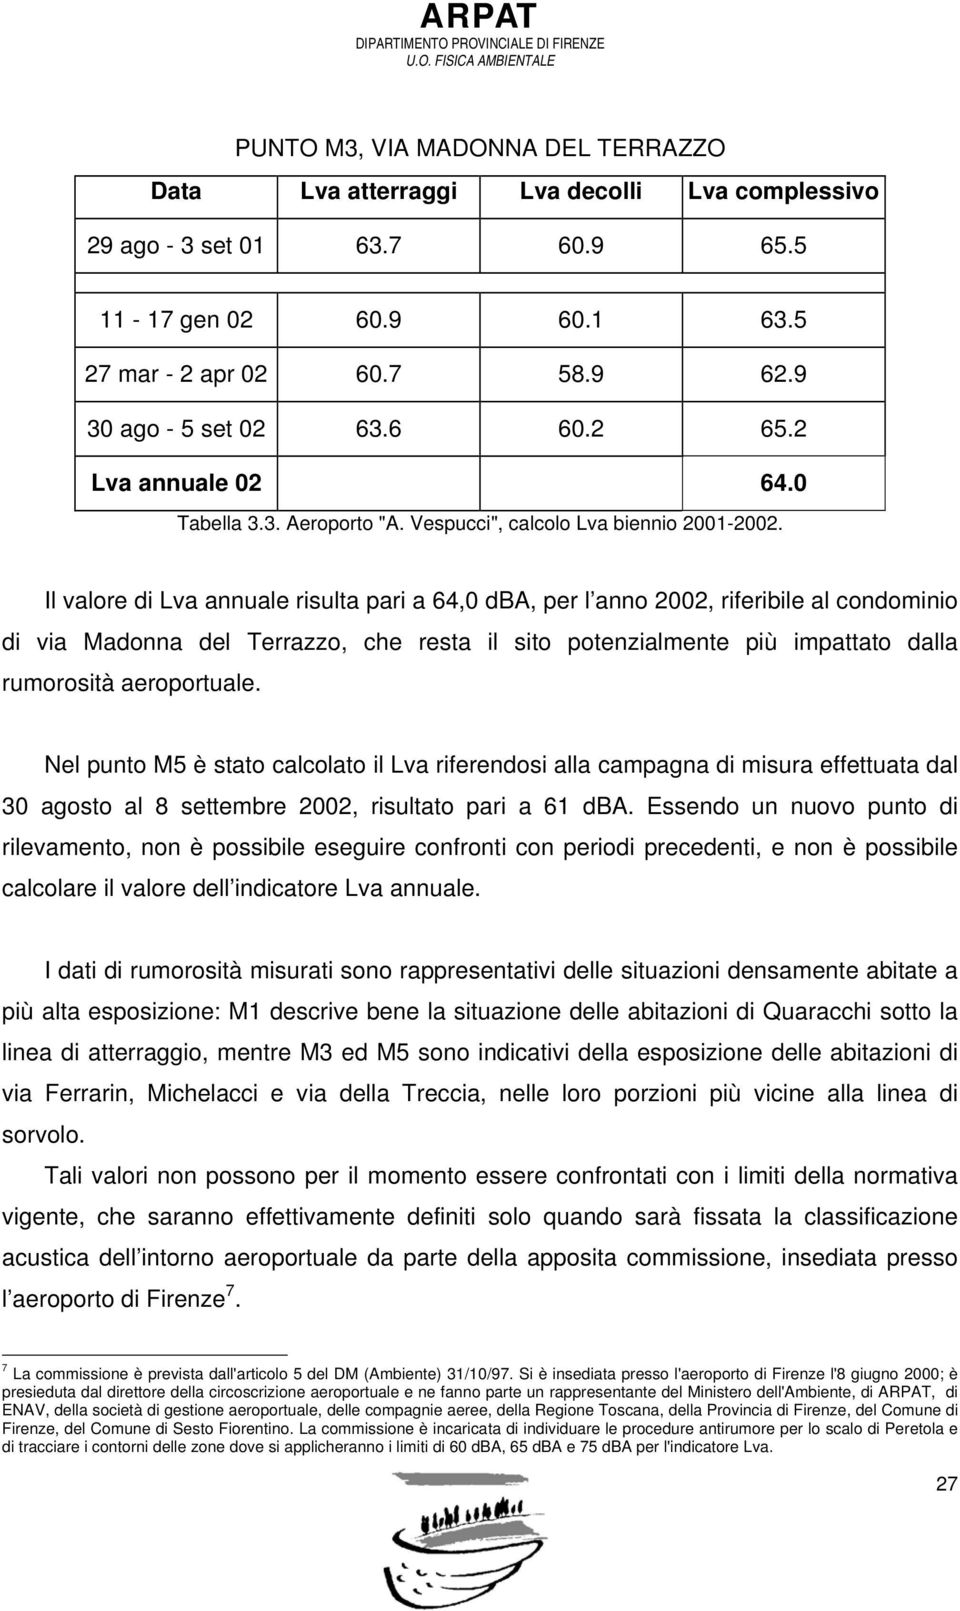 Il valore di Lva annuale risulta pari a 64,0 dba, per l anno 2002, riferibile al condominio di via Madonna del Terrazzo, che resta il sito potenzialmente più impattato dalla rumorosità aeroportuale.